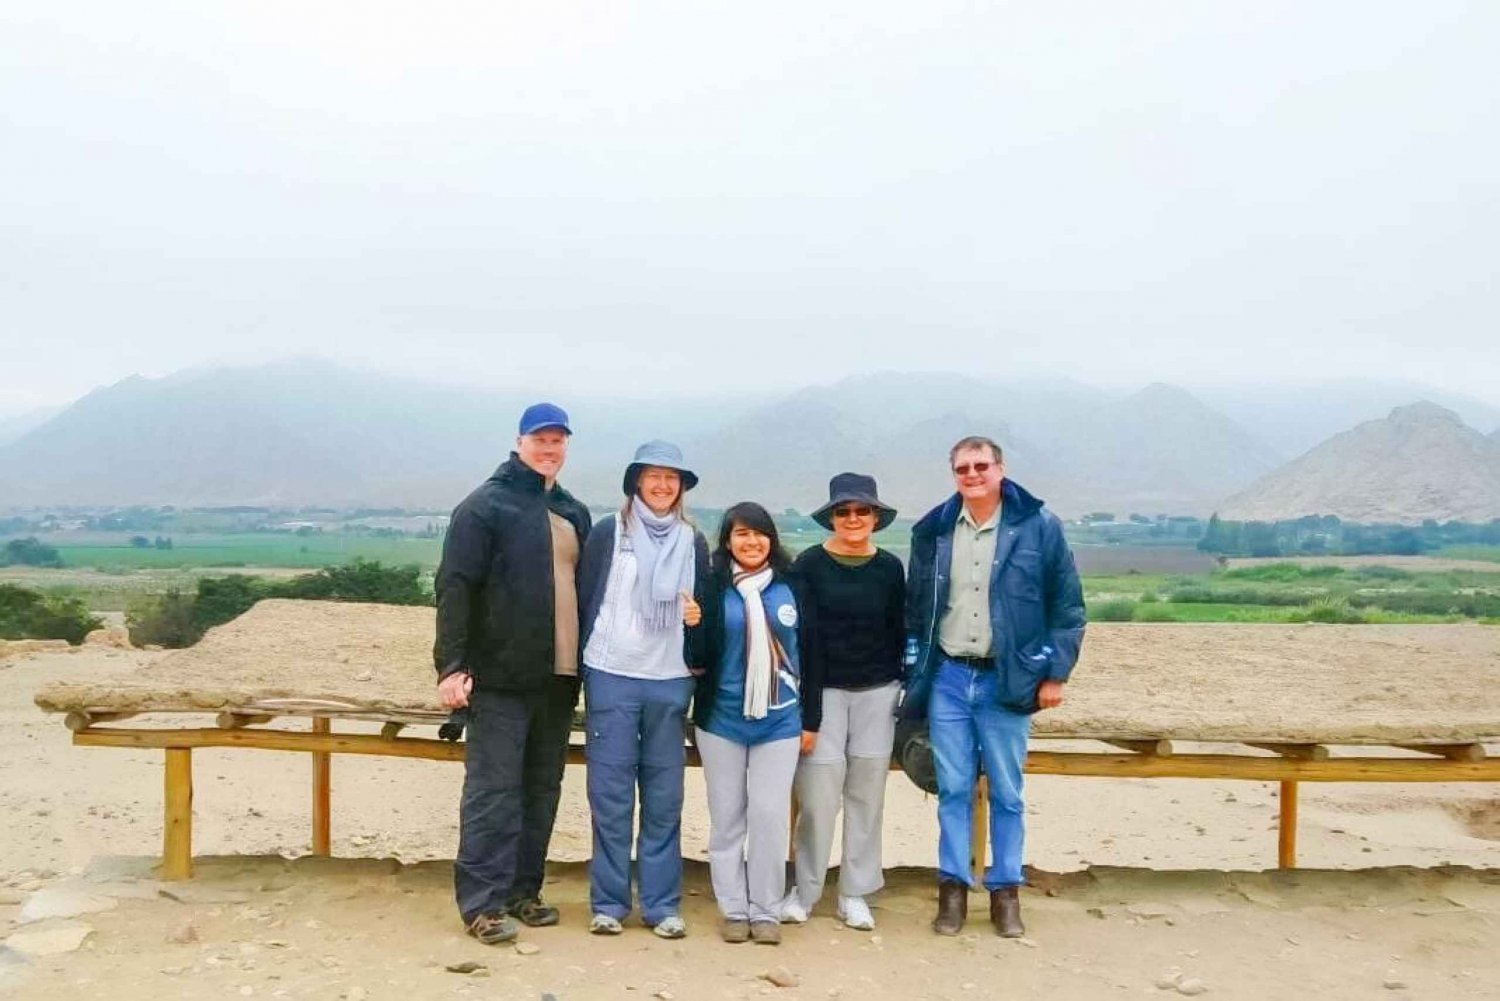 Lima: Caral heldags privat ekskursjon med måltider